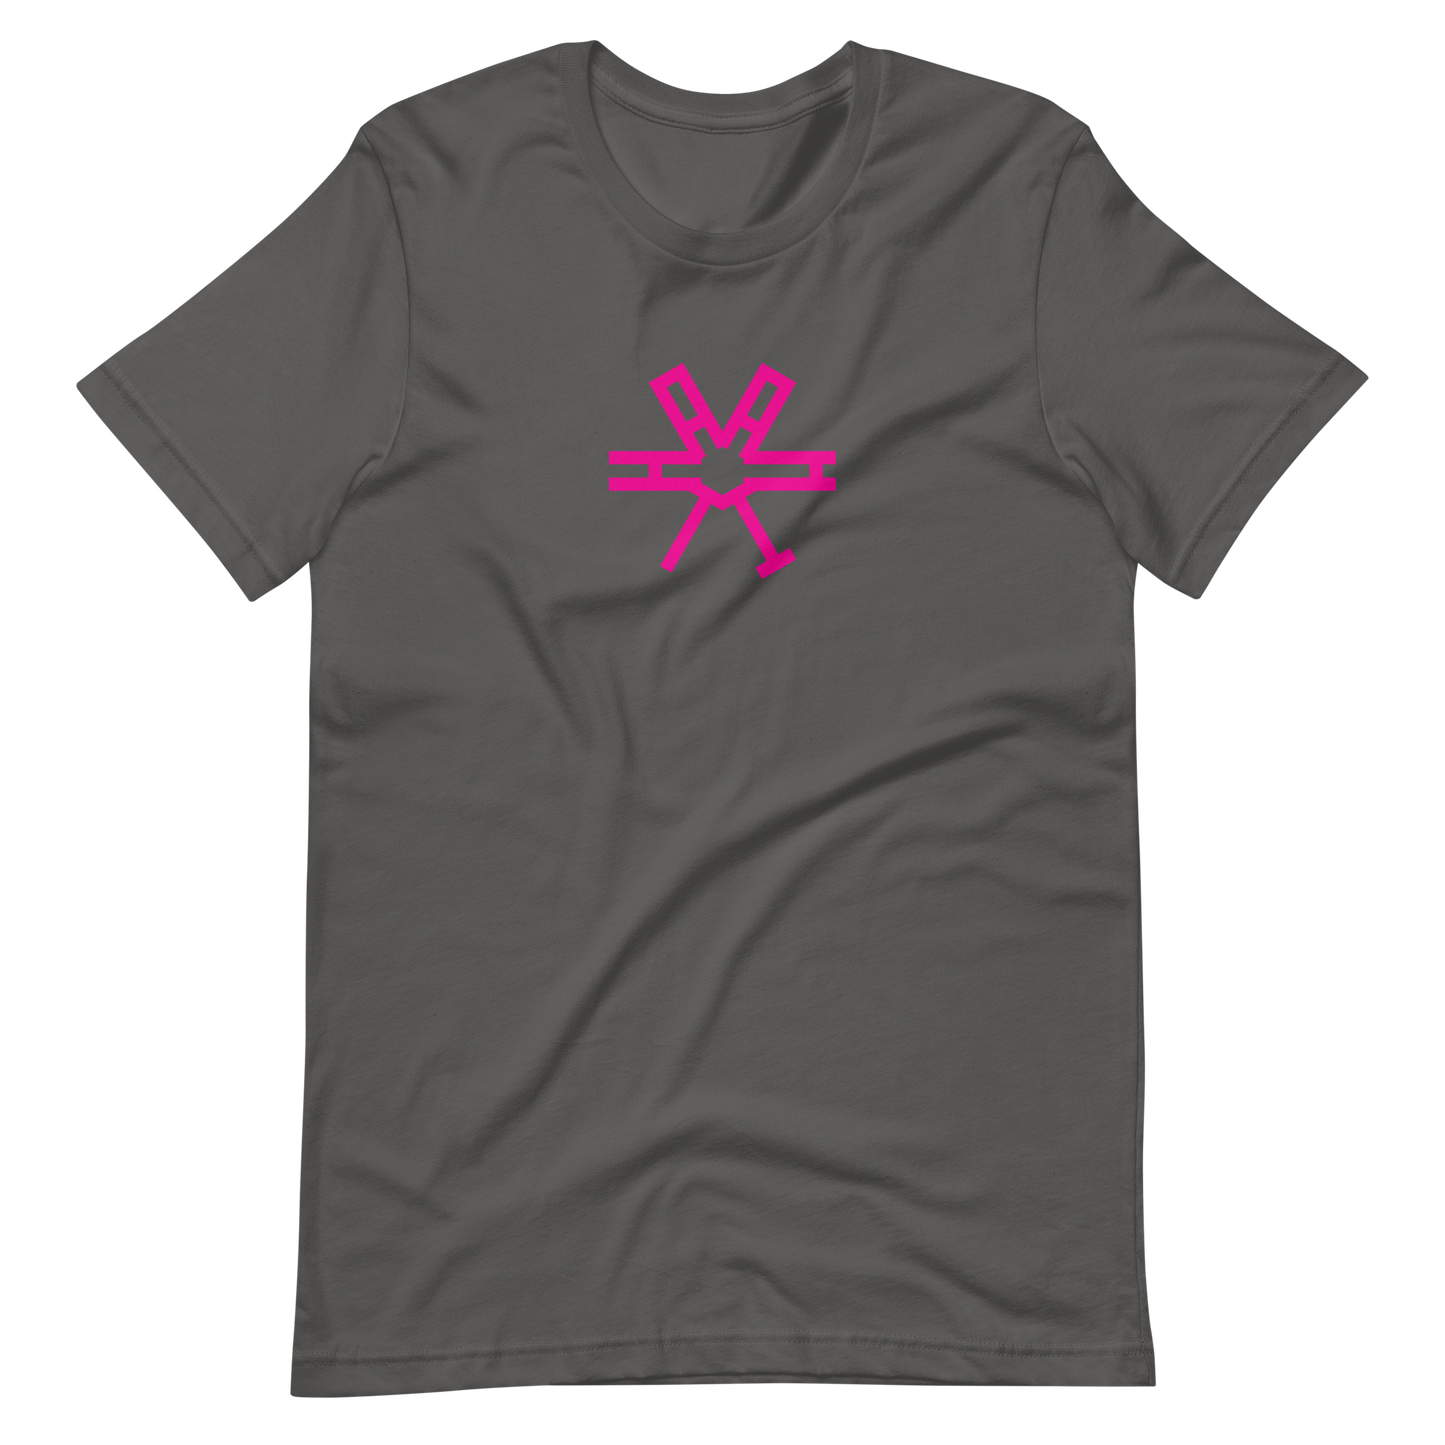 T-Shirt HAAMIT rund pink